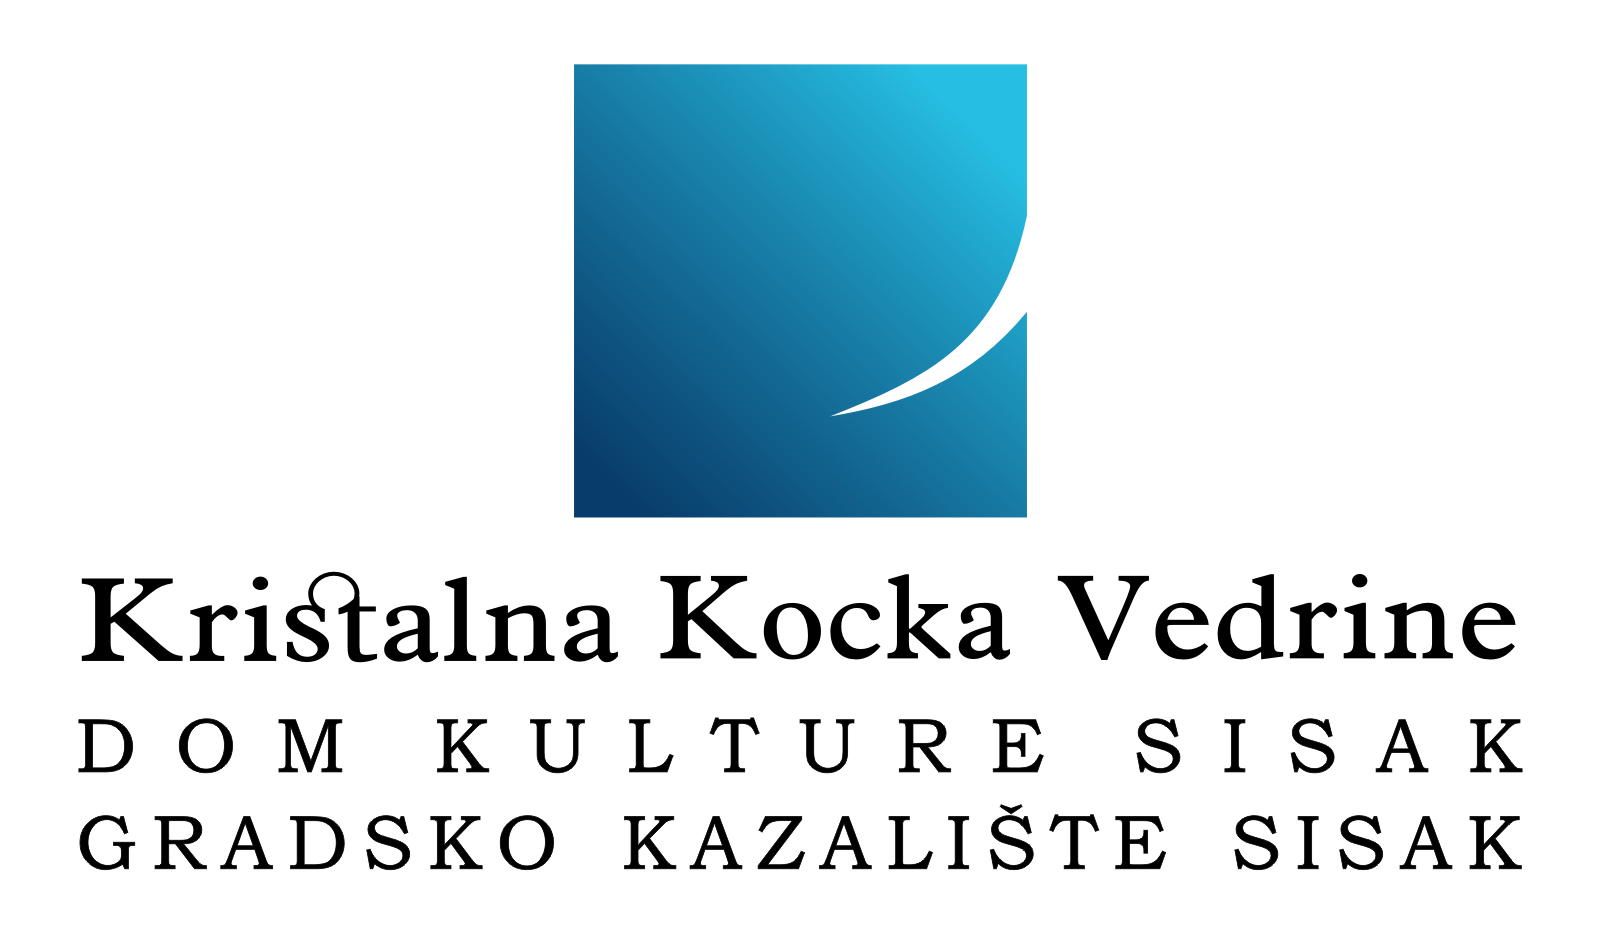 You are currently viewing Gostovanja Gradskog kazališta Sisak